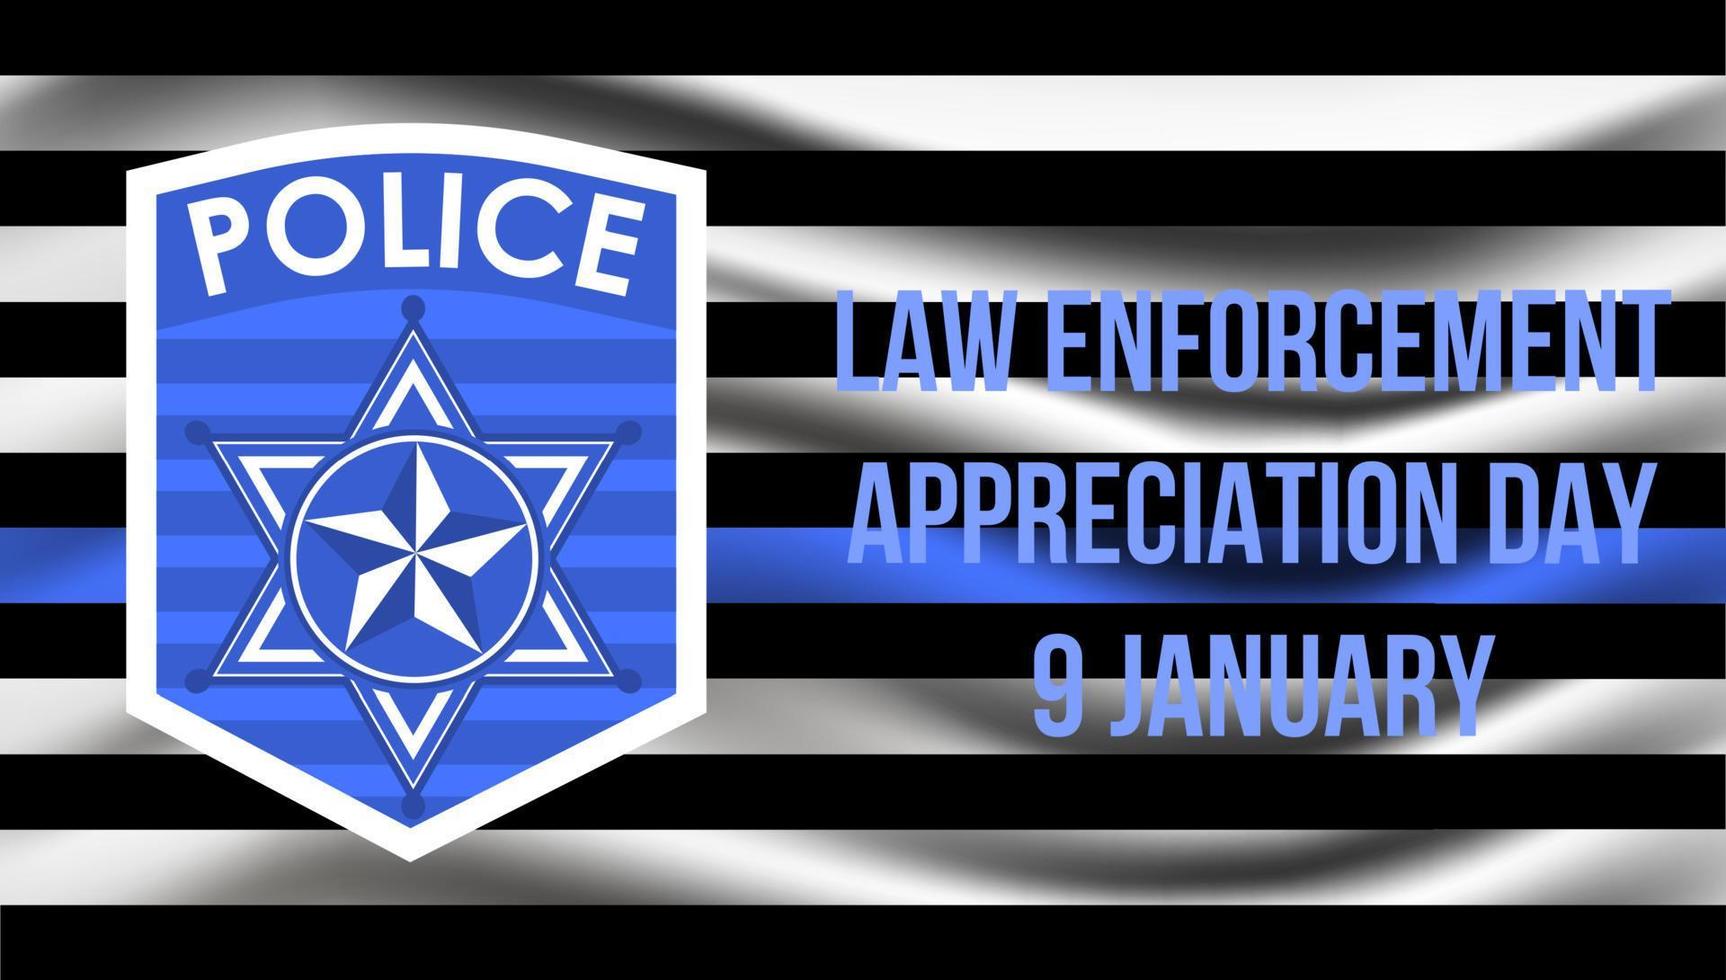 El día de apreciación de las fuerzas del orden público se celebra en EE. UU. el 9 de enero de cada año. insignia del departamento de policía, se muestra el escudo del sheriff. vector plano con volante, web, banner, emblema